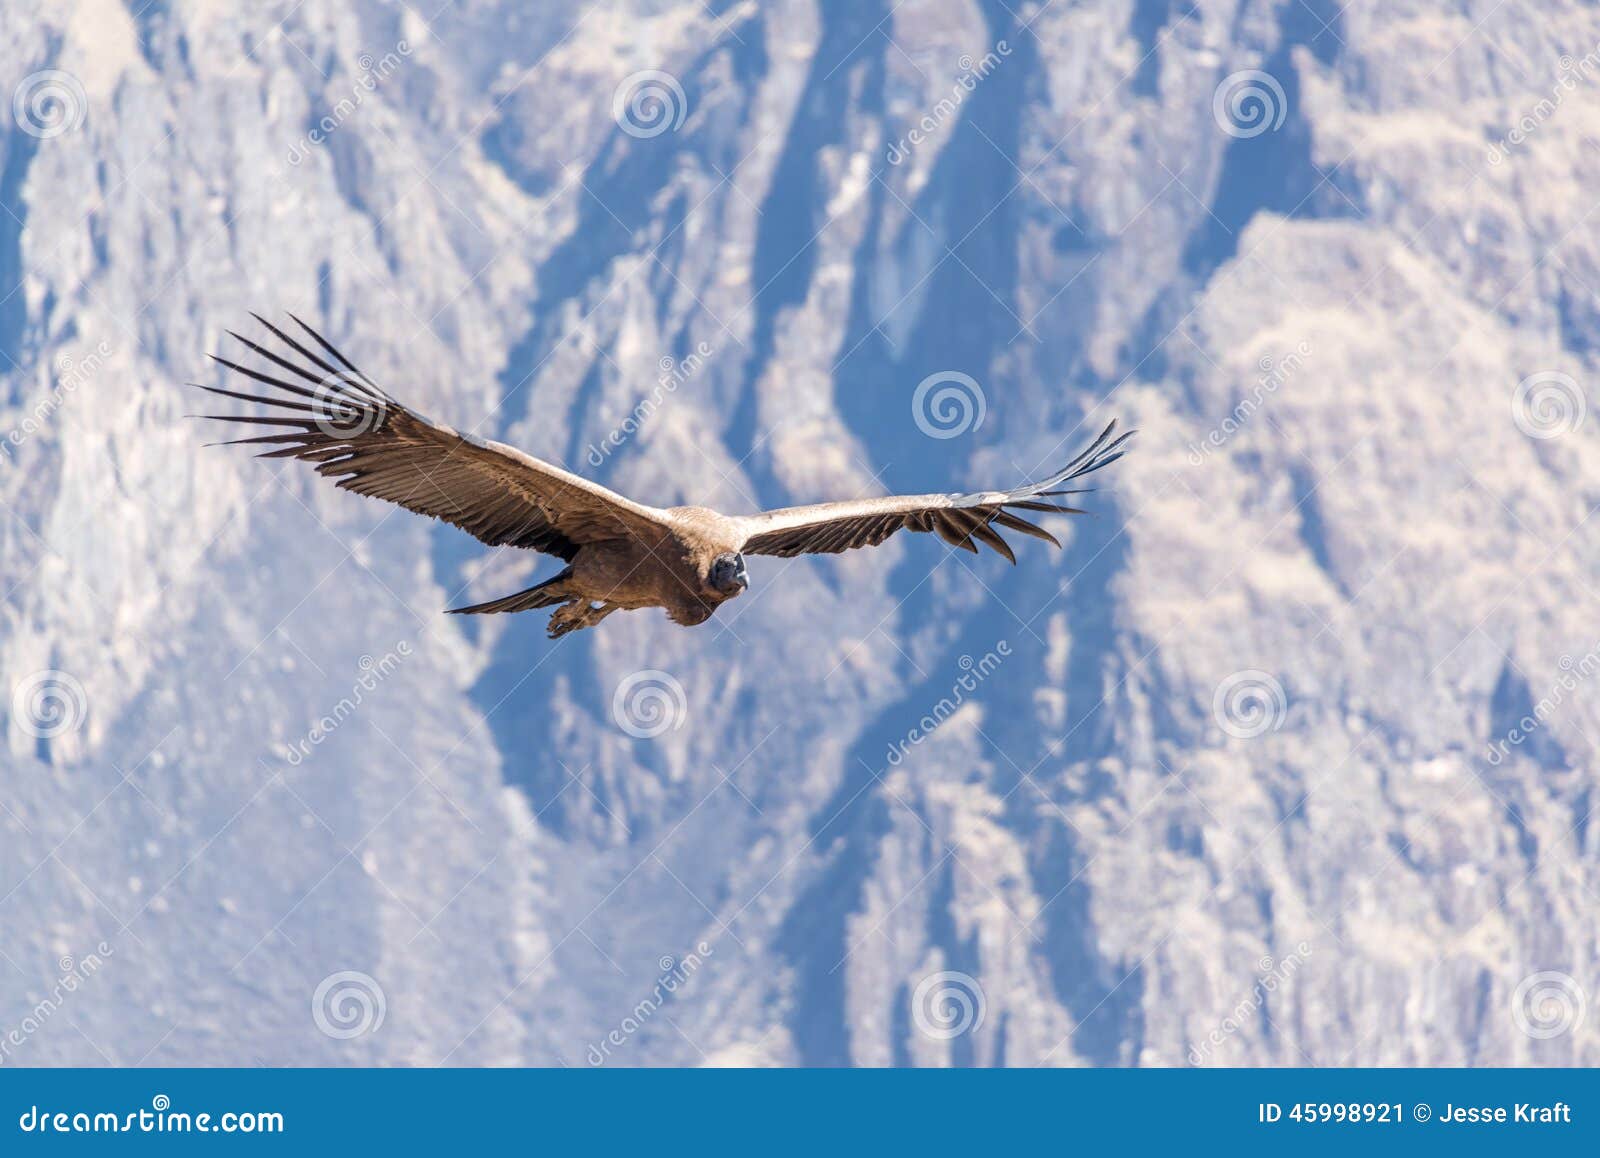 flying andean condor